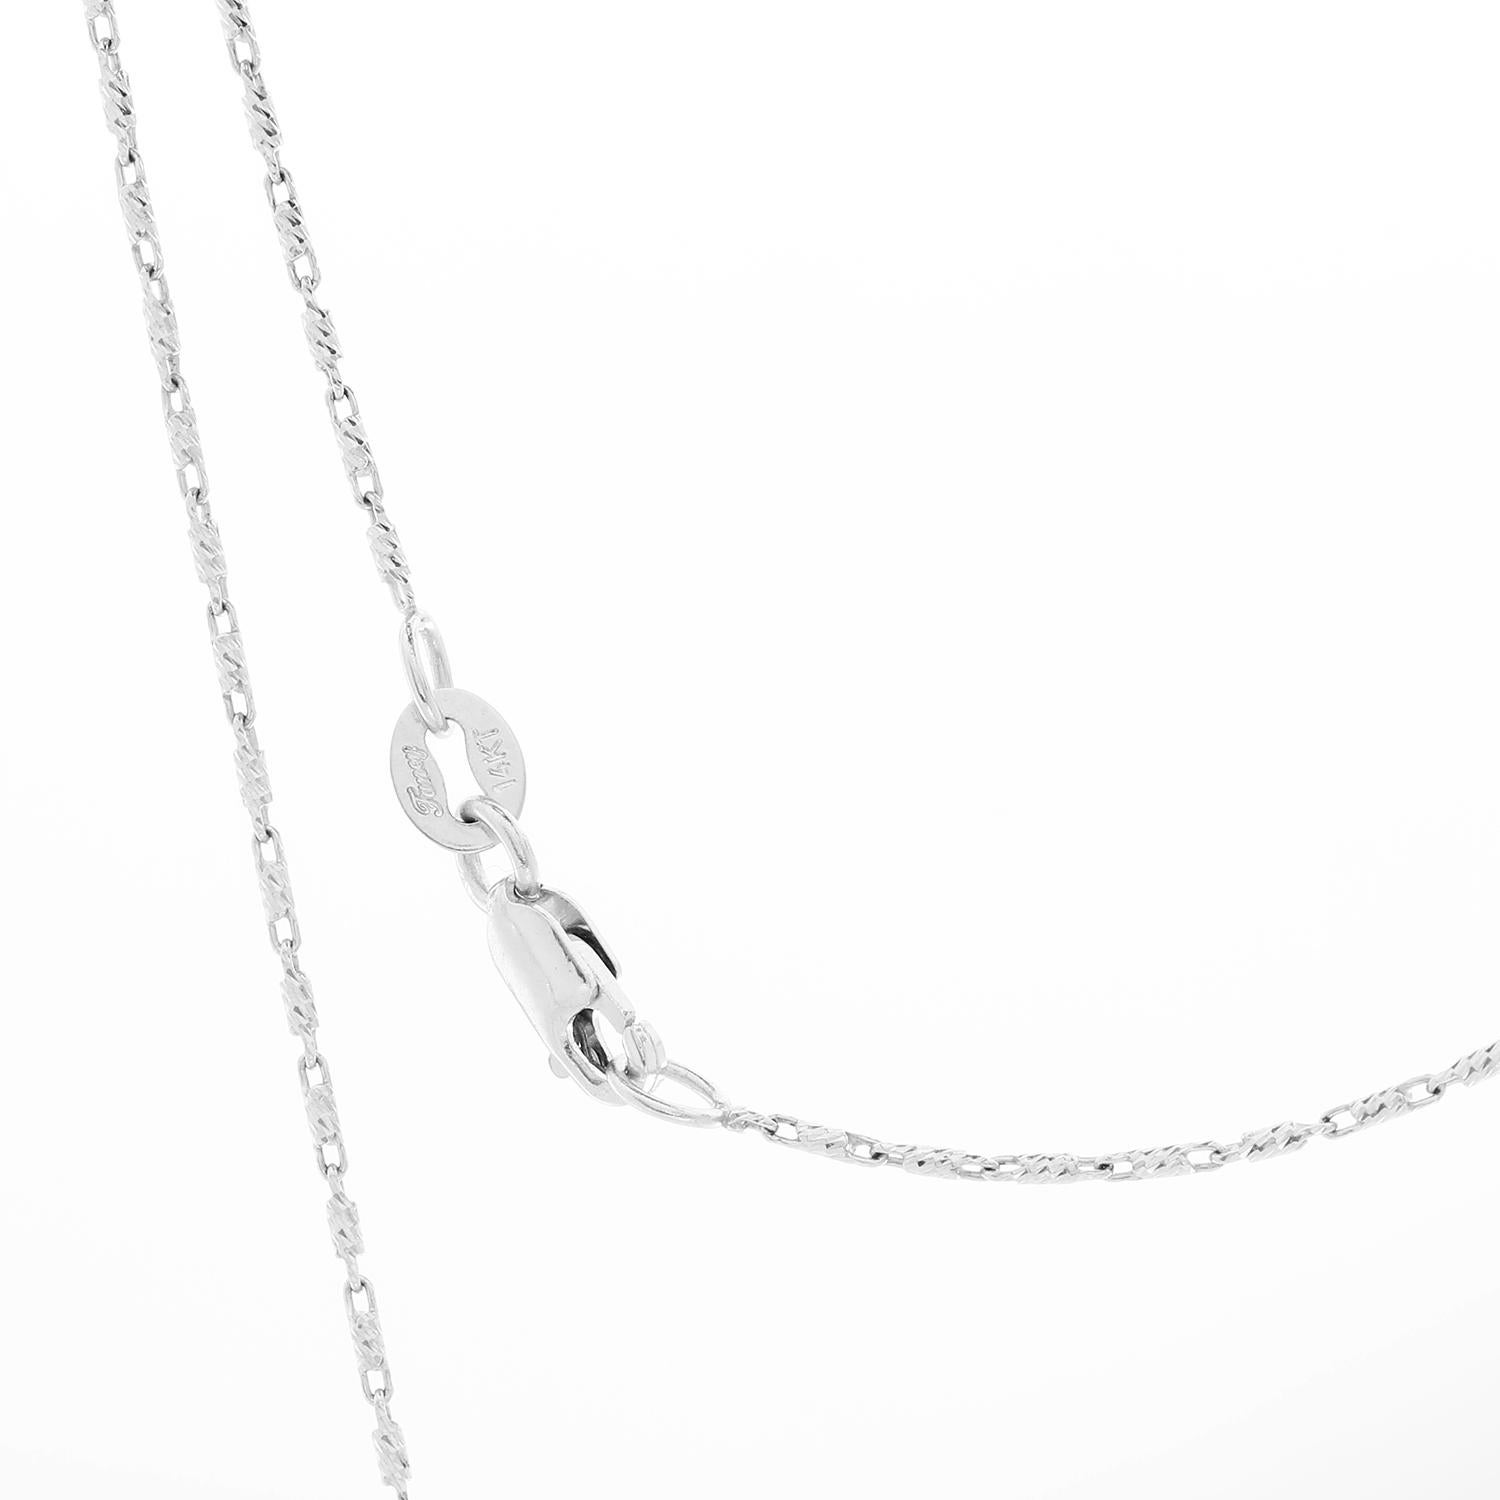 Women's Gorgeous White Gold Diamond and Tanzanite Pendant Necklace